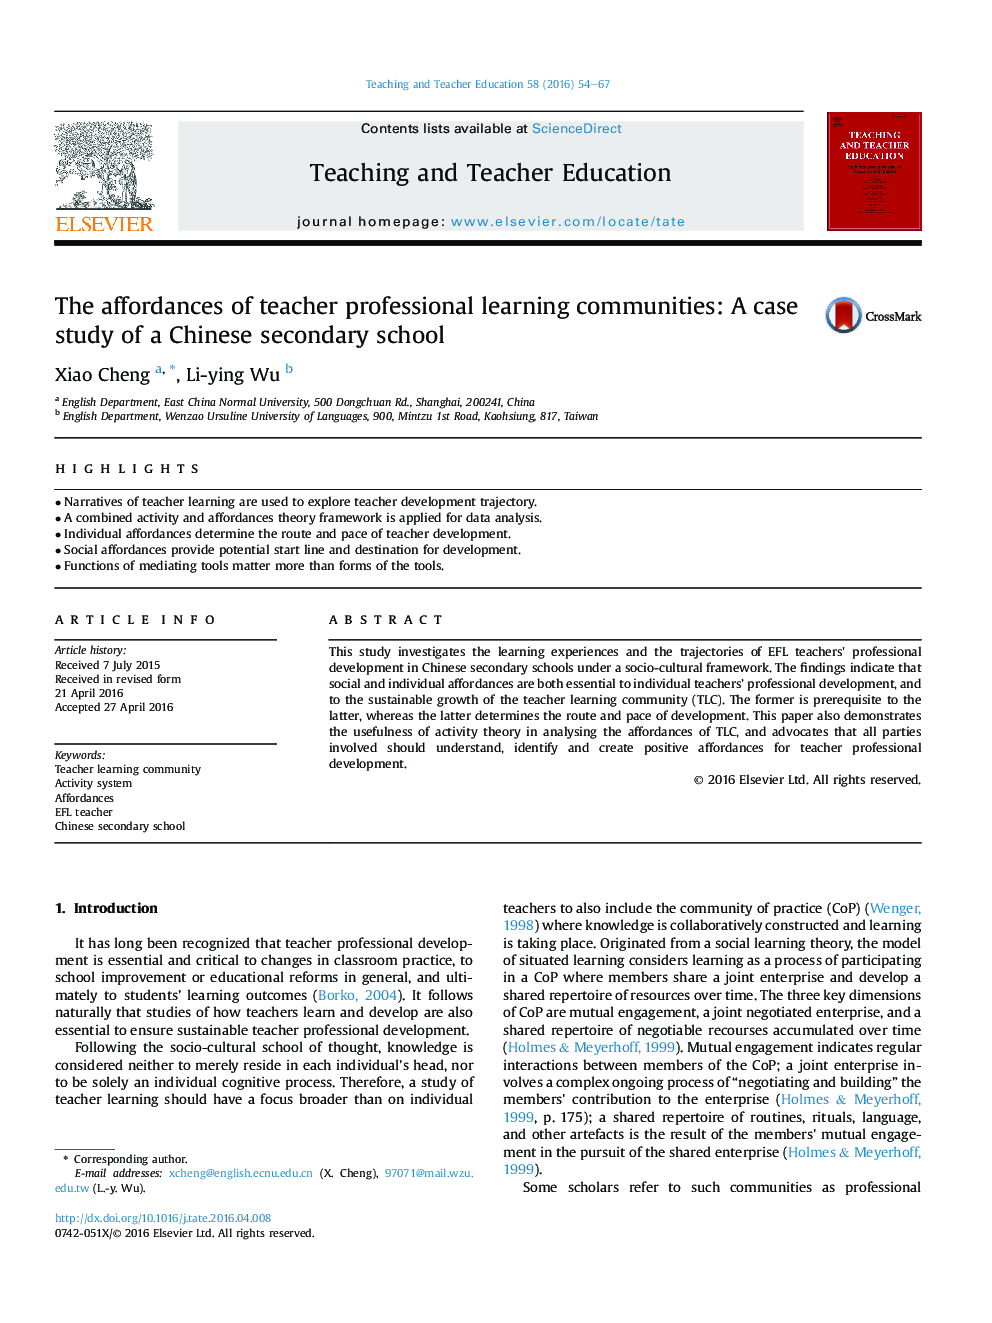 هزینه های جوامع یادگیری حرفه ای معلم: مطالعه موردی یک مدرسه متوسطه چینی 